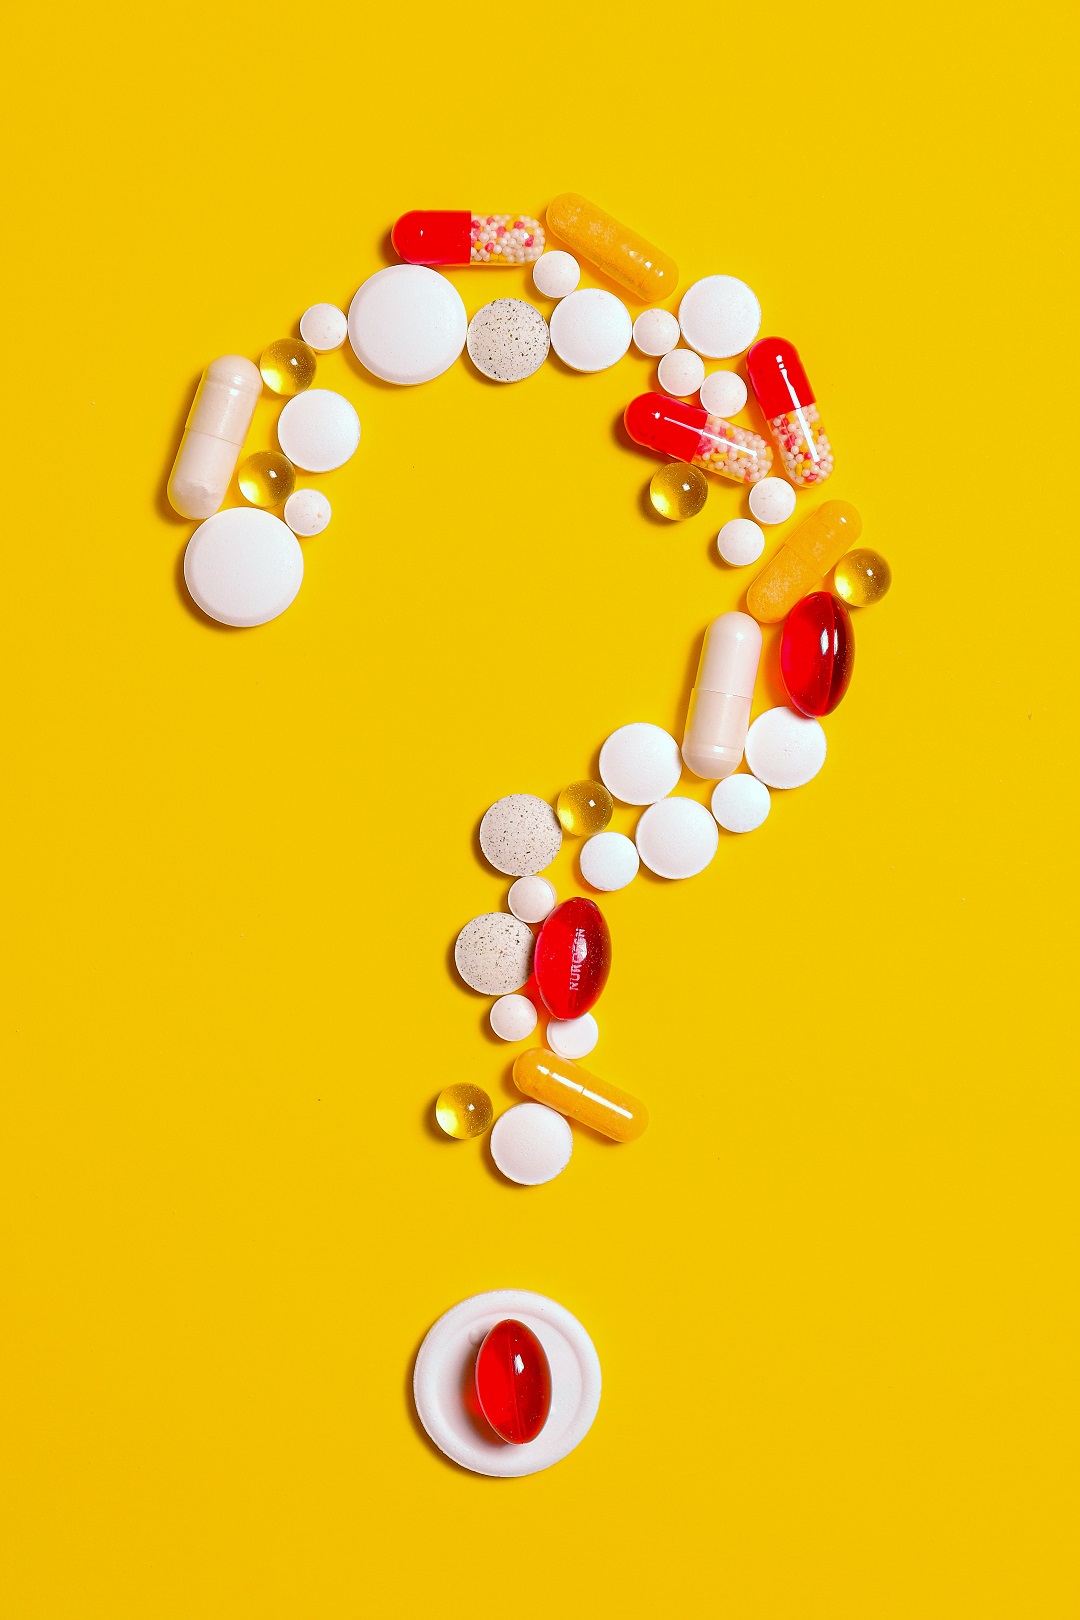 Medicinas pastillas signo de interrogación en fondo amarillo